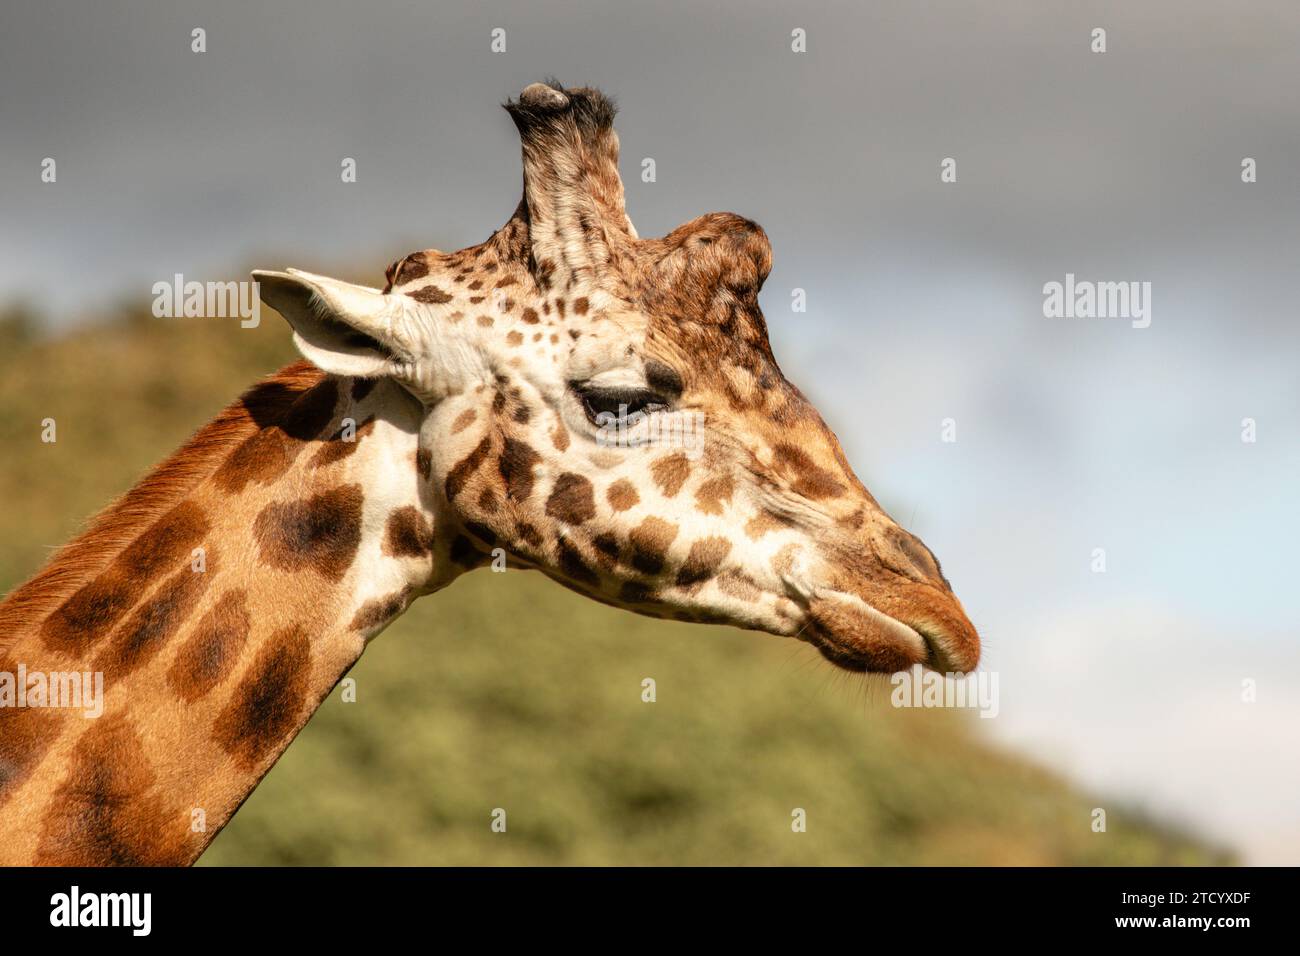 Portrait de profil rapproché d'une girafe. Il montre la tête et la partie supérieure du cou et il y a de l'espace pour le texte autour de l'animal Banque D'Images